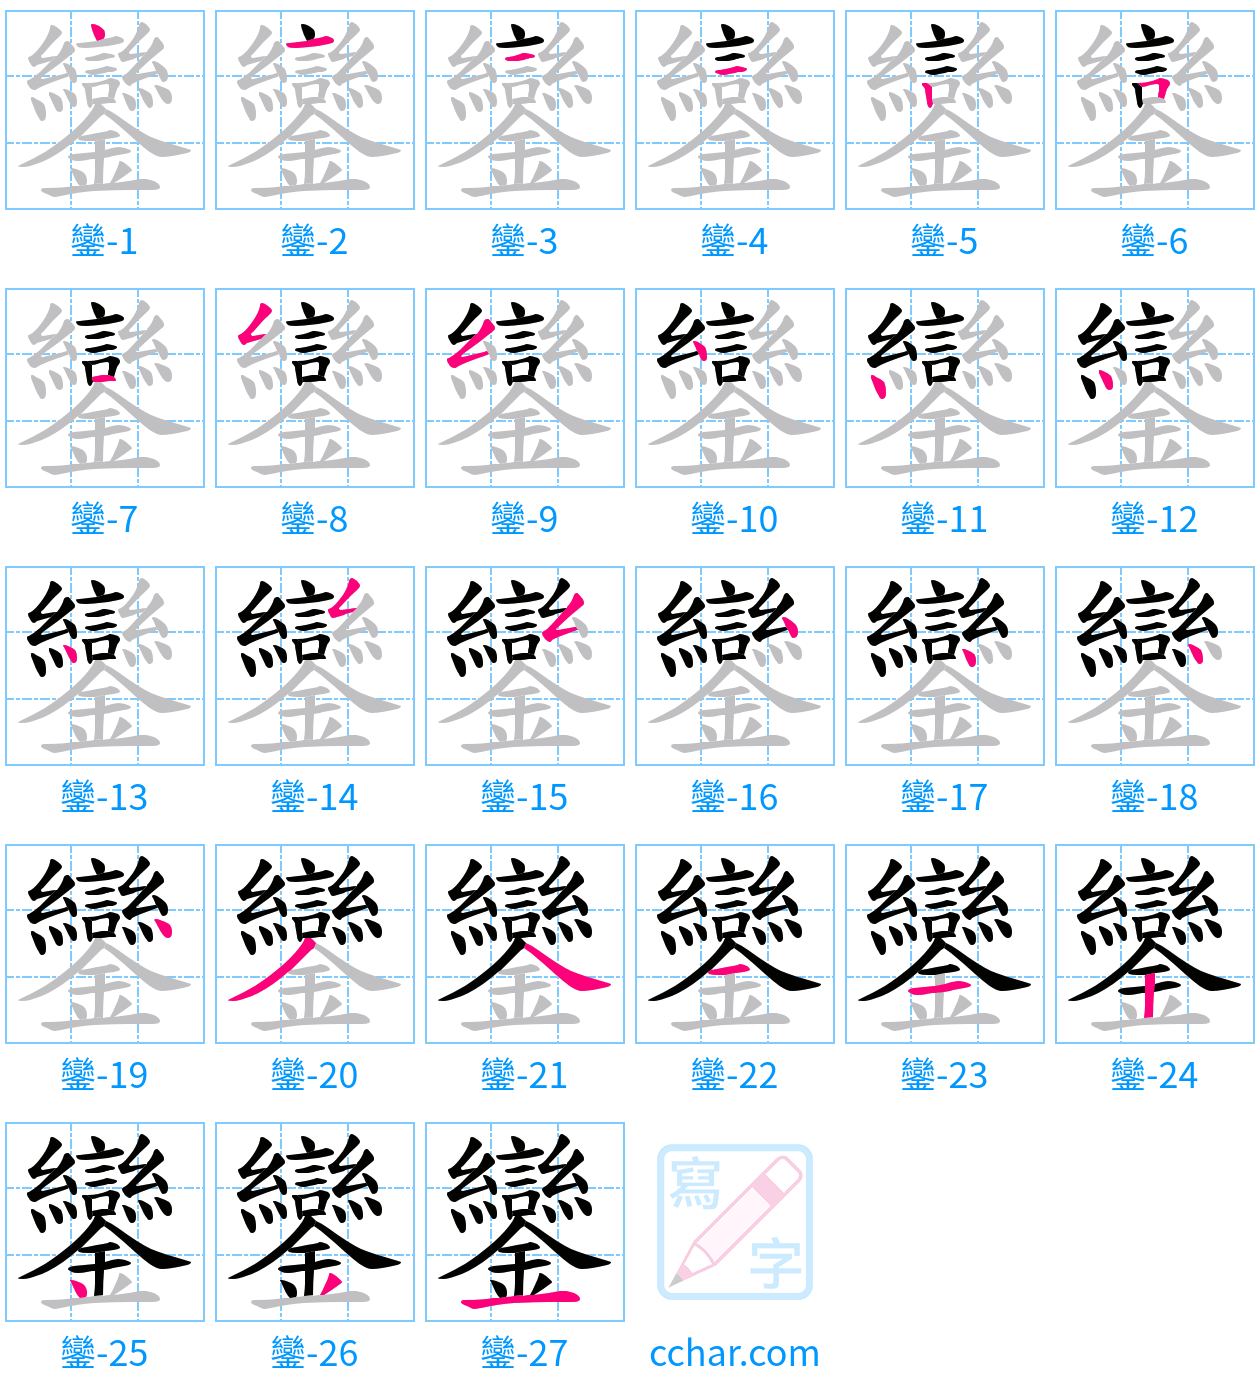 鑾 stroke order step-by-step diagram